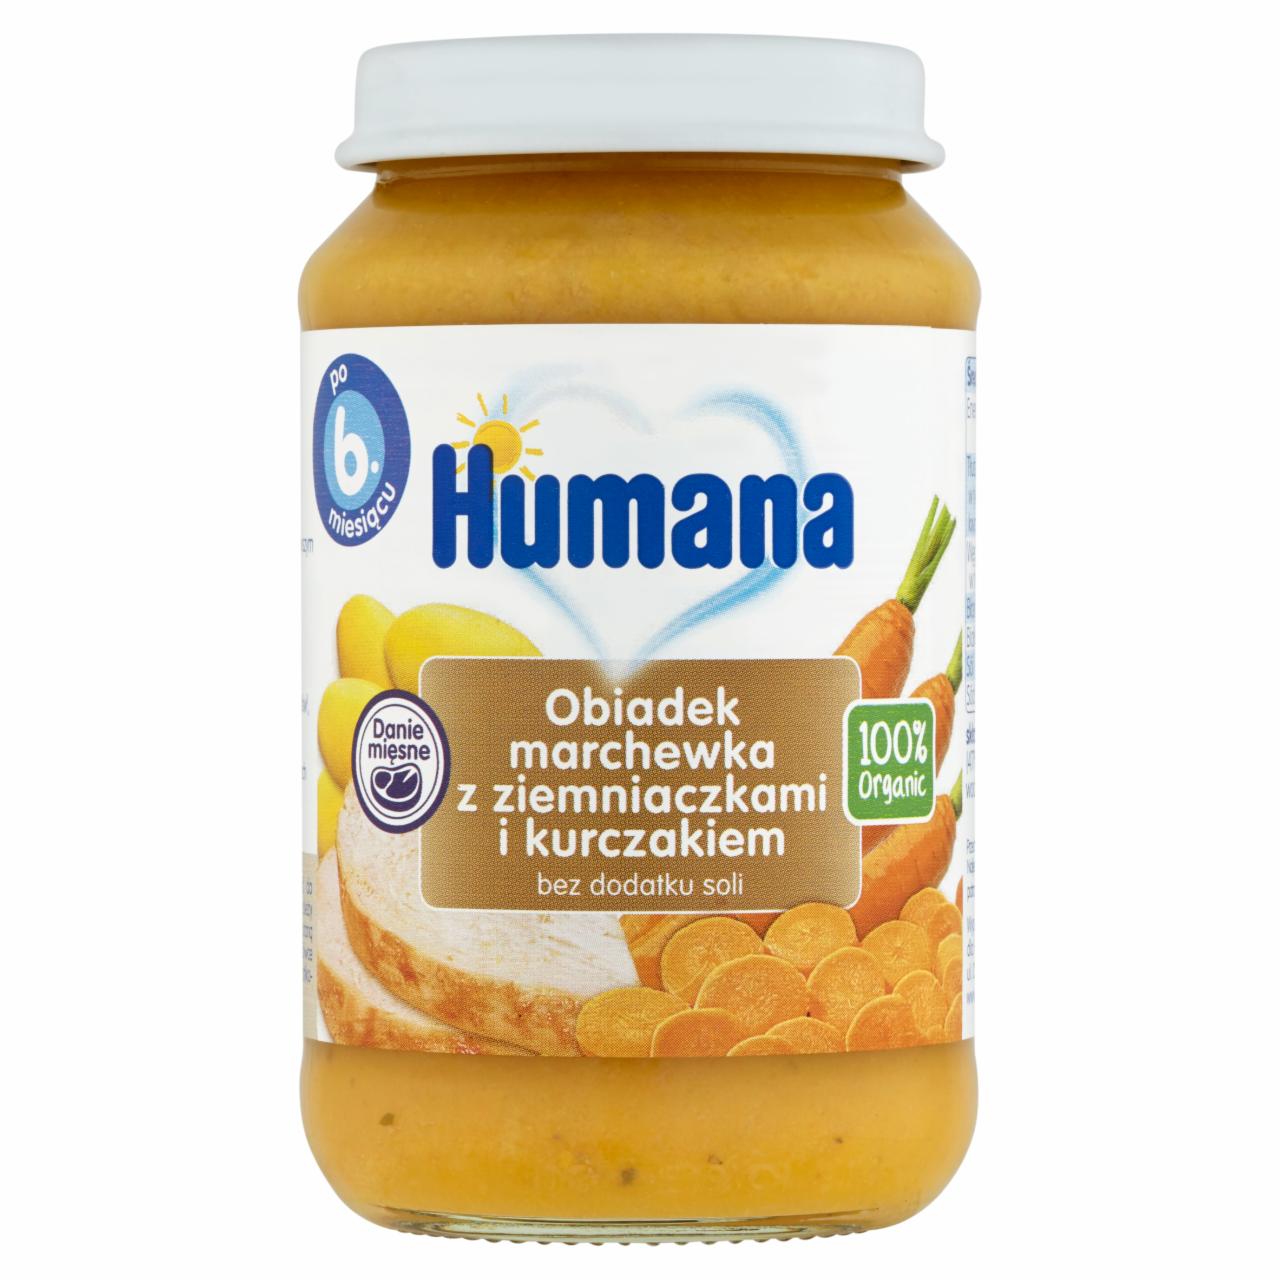 Zdjęcia - Humana 100% Organic Obiadek marchewka z ziemniaczkami i kurczakiem po 6. miesiącu 190 g